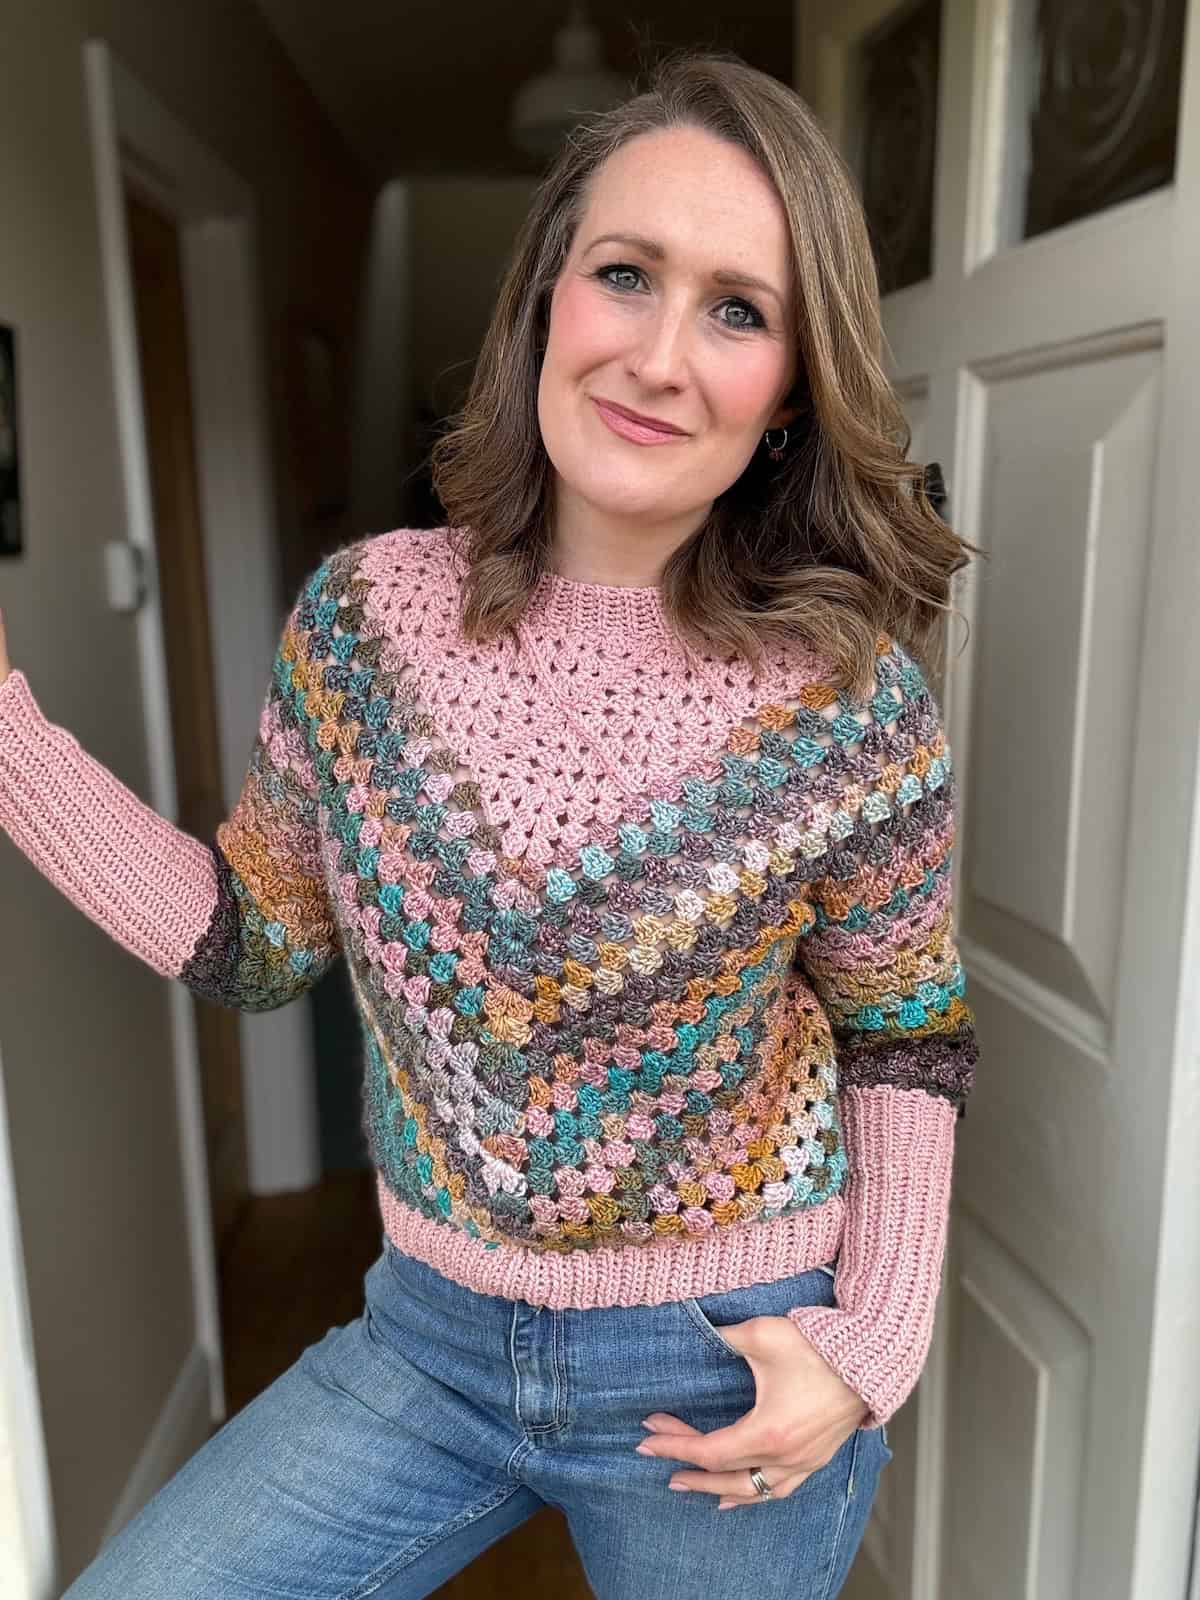 Woman in doorway wearing a modern crochet sweater.